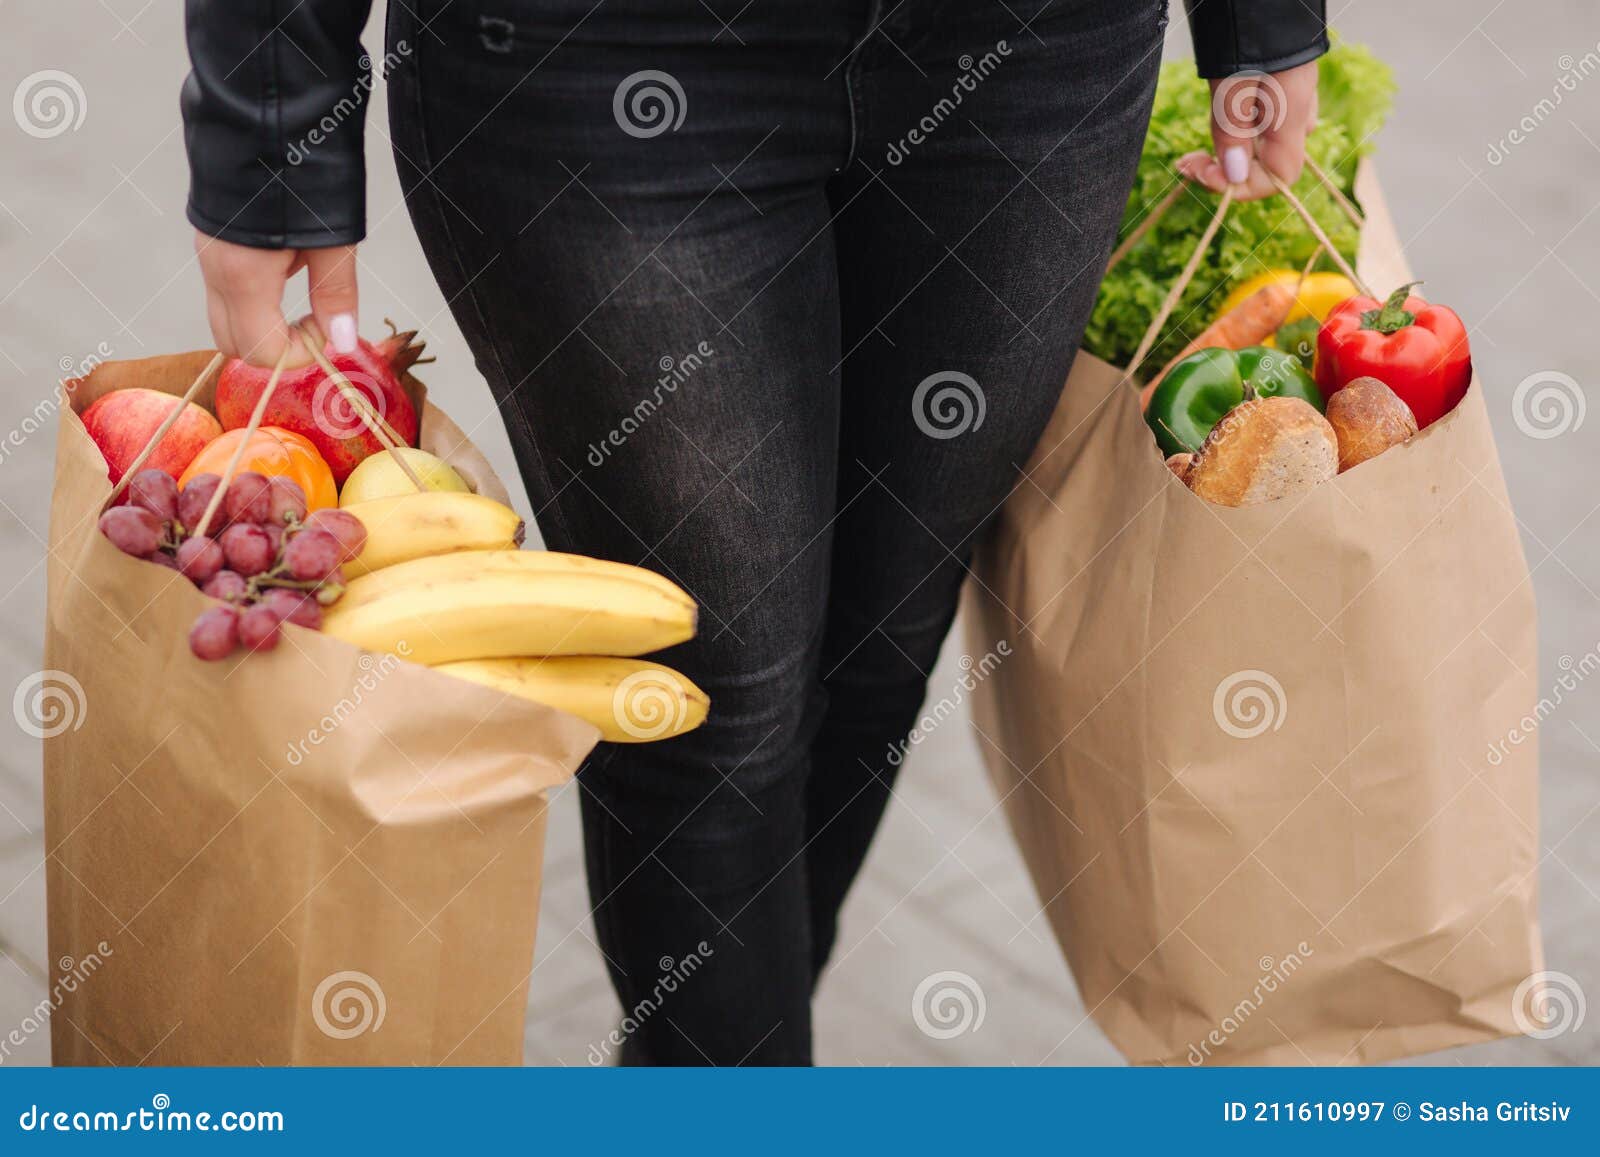 Comestibles De Un Supermercado Un Paquete De Ecología Artesanal. Entrega De Alimentos Durante La Cuarentena. Bolsas Ecológicas Imagen de archivo - Imagen de adulto, coche: 211610997